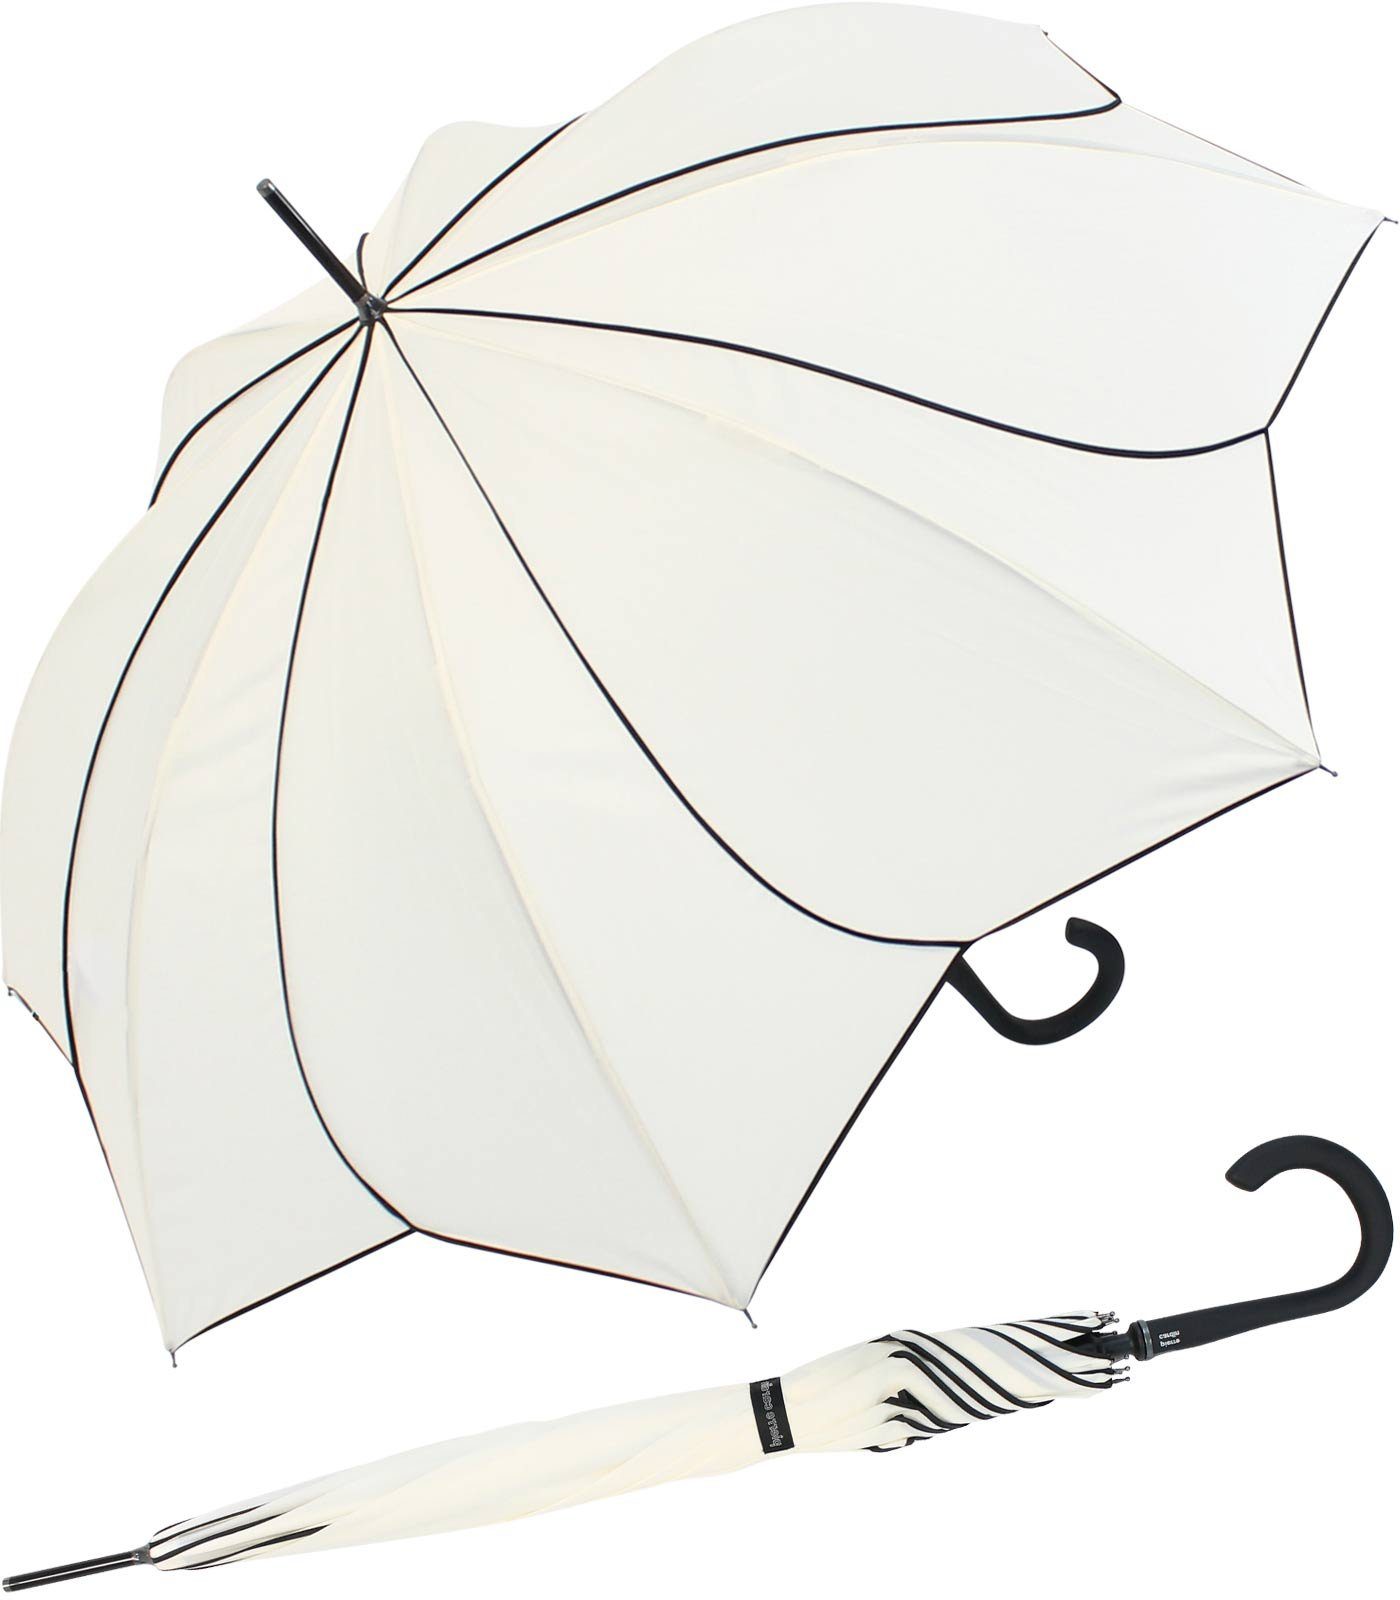 Pierre Cardin Langregenschirm Damen groß stabil mit Automatik - Sunflower, fällt durch sein besondere Form und die Kontraste auf